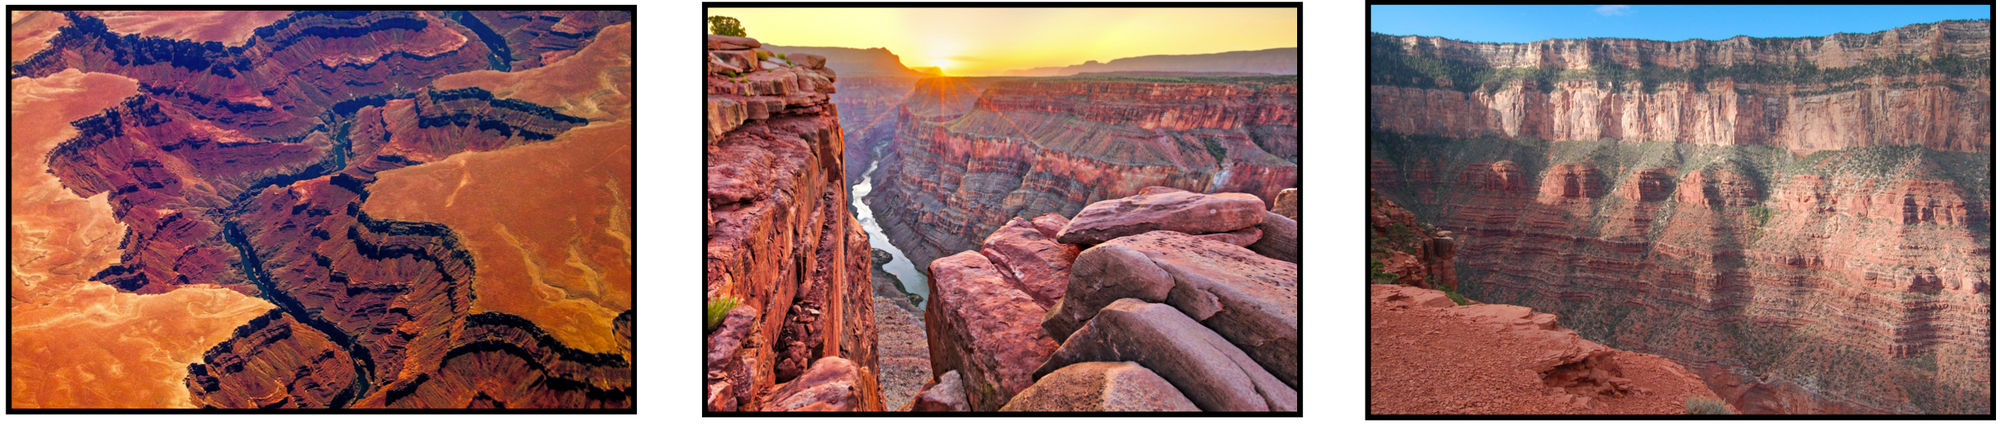 Een rij van 3 foto’s van de Grand Canyon. De meest linkse is een hoog genomen luchtfoto, waarin de GC als scheur door het landschap trekt. De middelste foto is genomen vanaf de rand van een plek in de GC, een groot ravijn tonend waar onderin een rivier loopt. De rechtse foto toont een wand van de GC waarin de verscheidene aardlagen duidelijk zichtbaar worden.